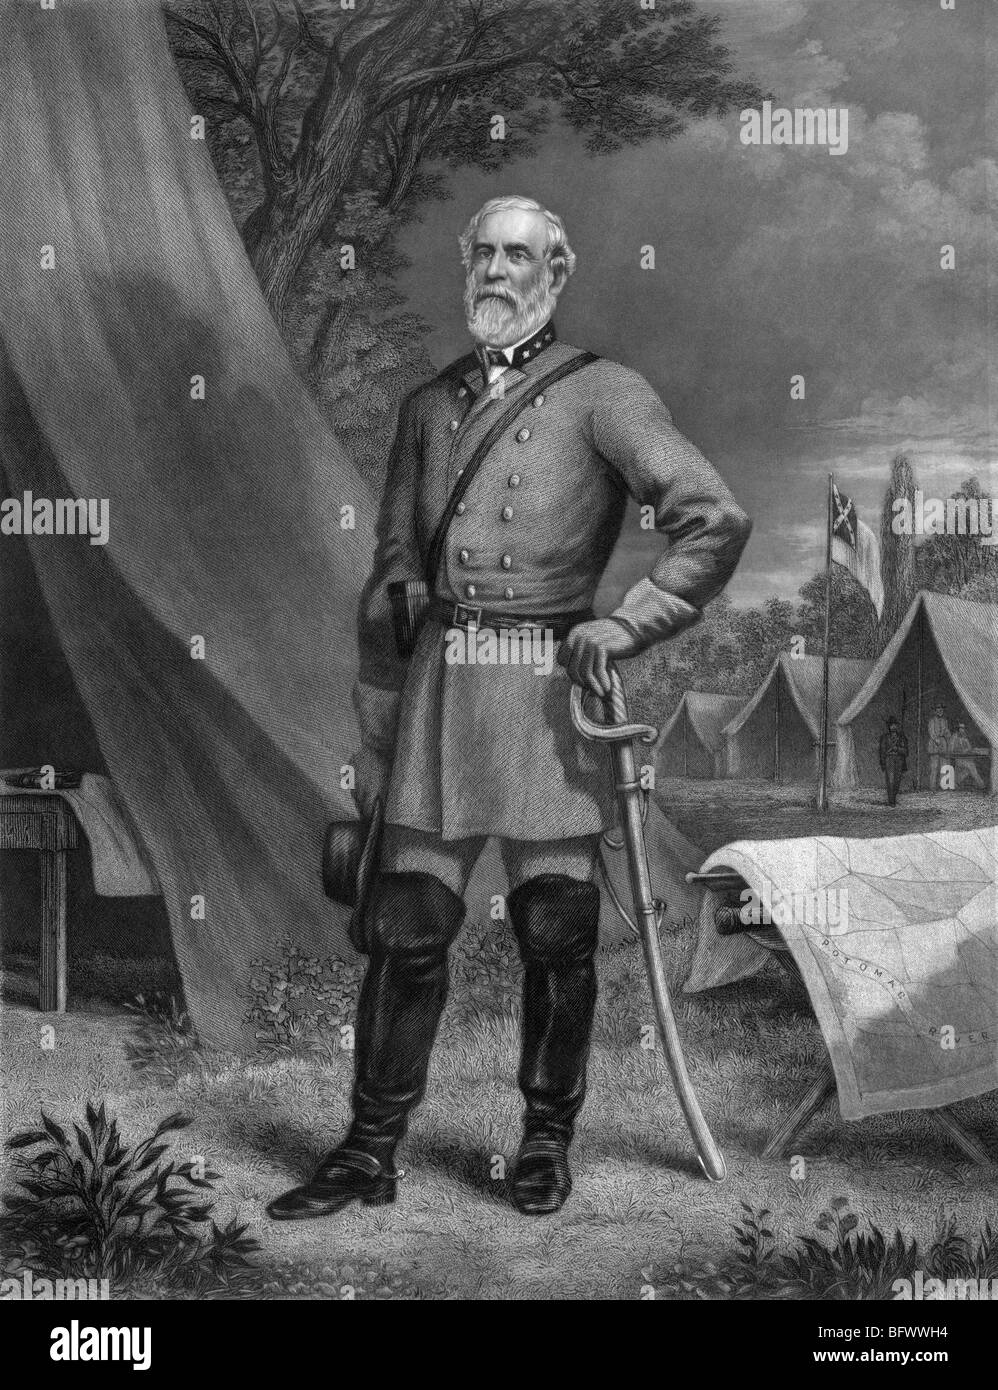 Portrait von General Robert E Lee (1807-1870) - Kommandeur der Konföderierten Army of Northern Virginia in den US Civil War. Stockfoto